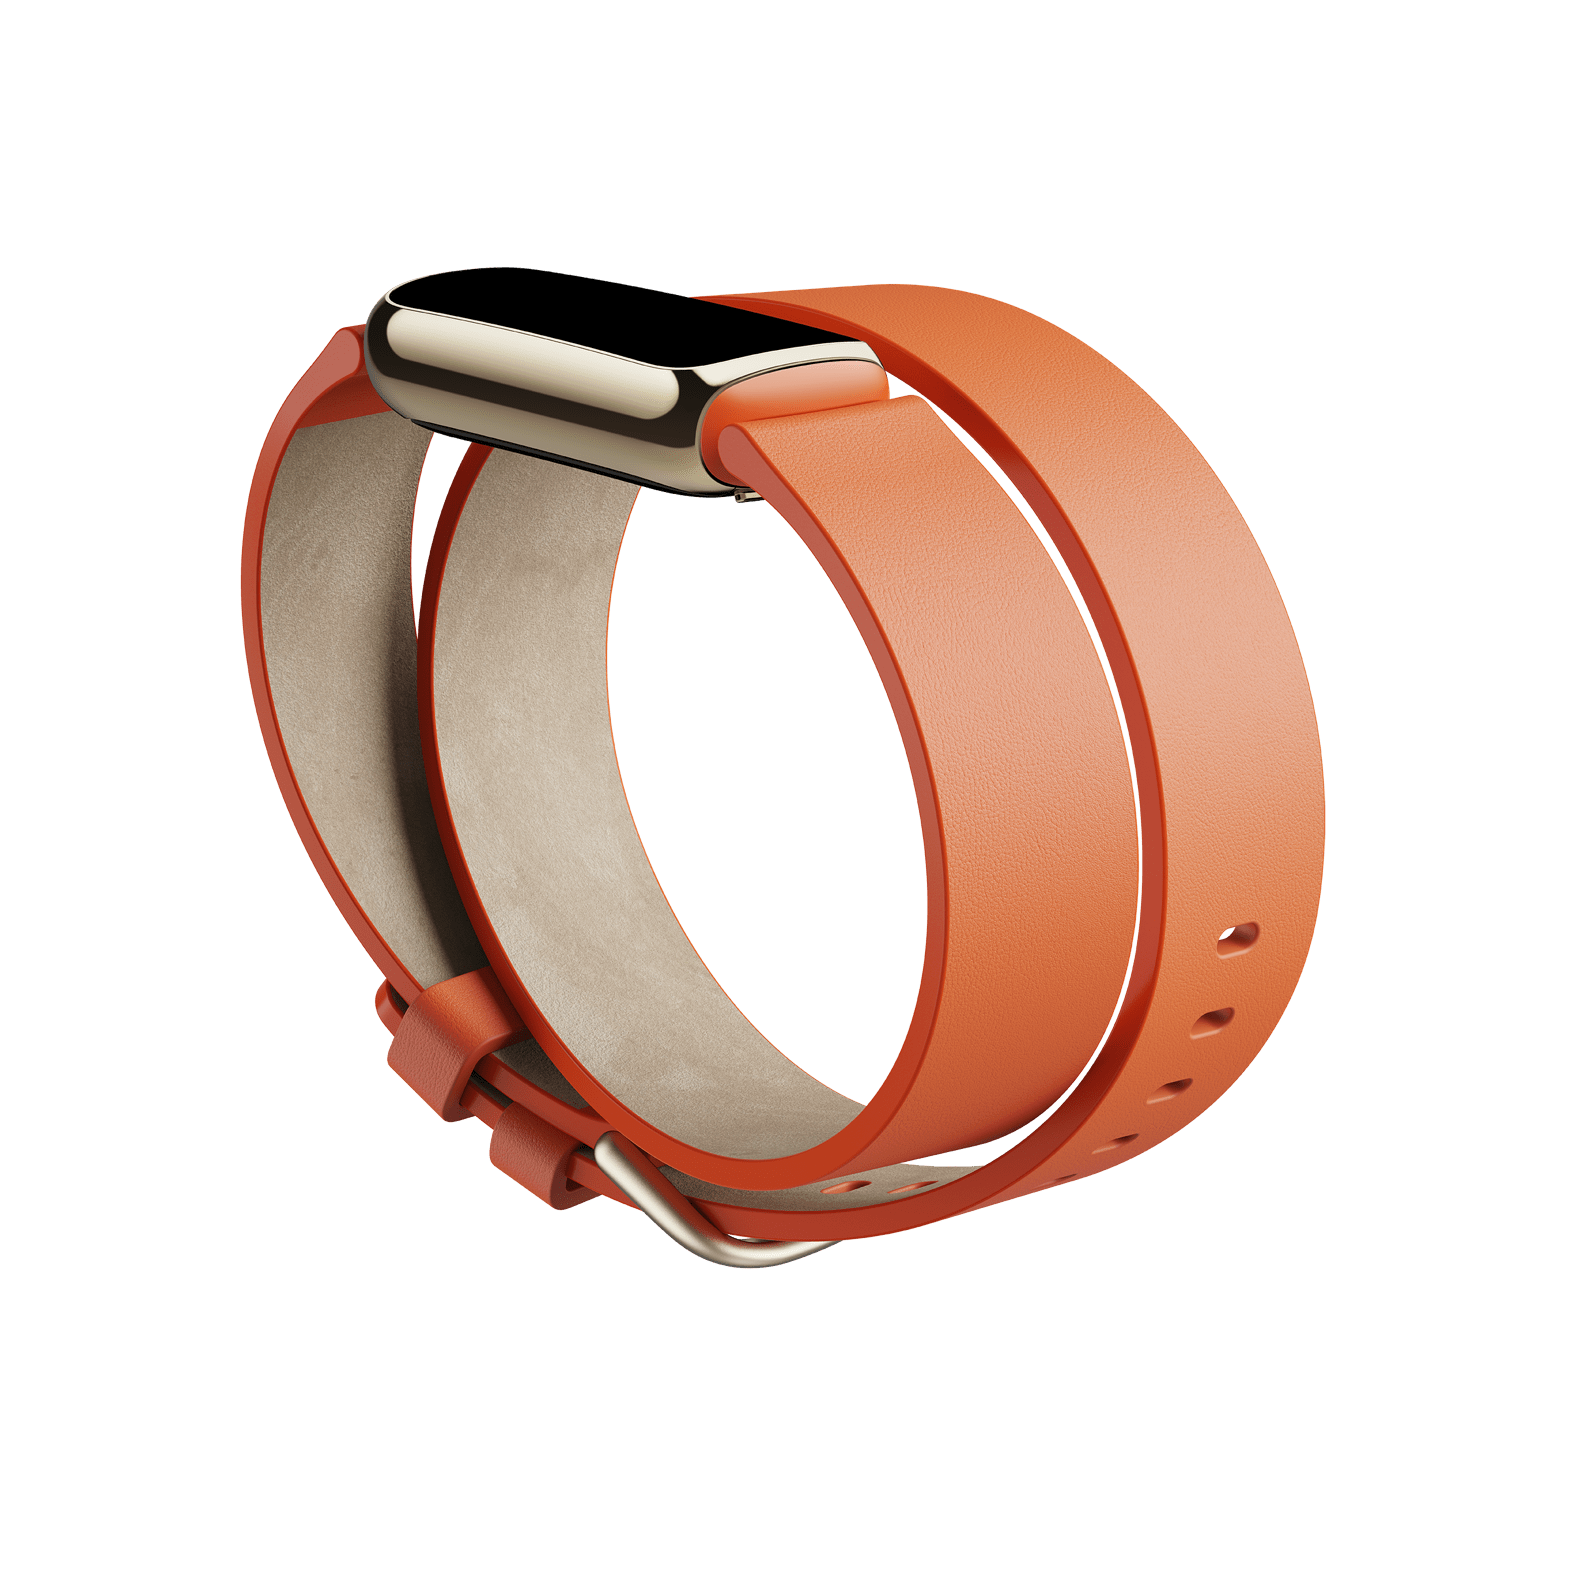 دستبند چرمی با کیفیت بالا و زیبا در رنگ زرد نارنجی